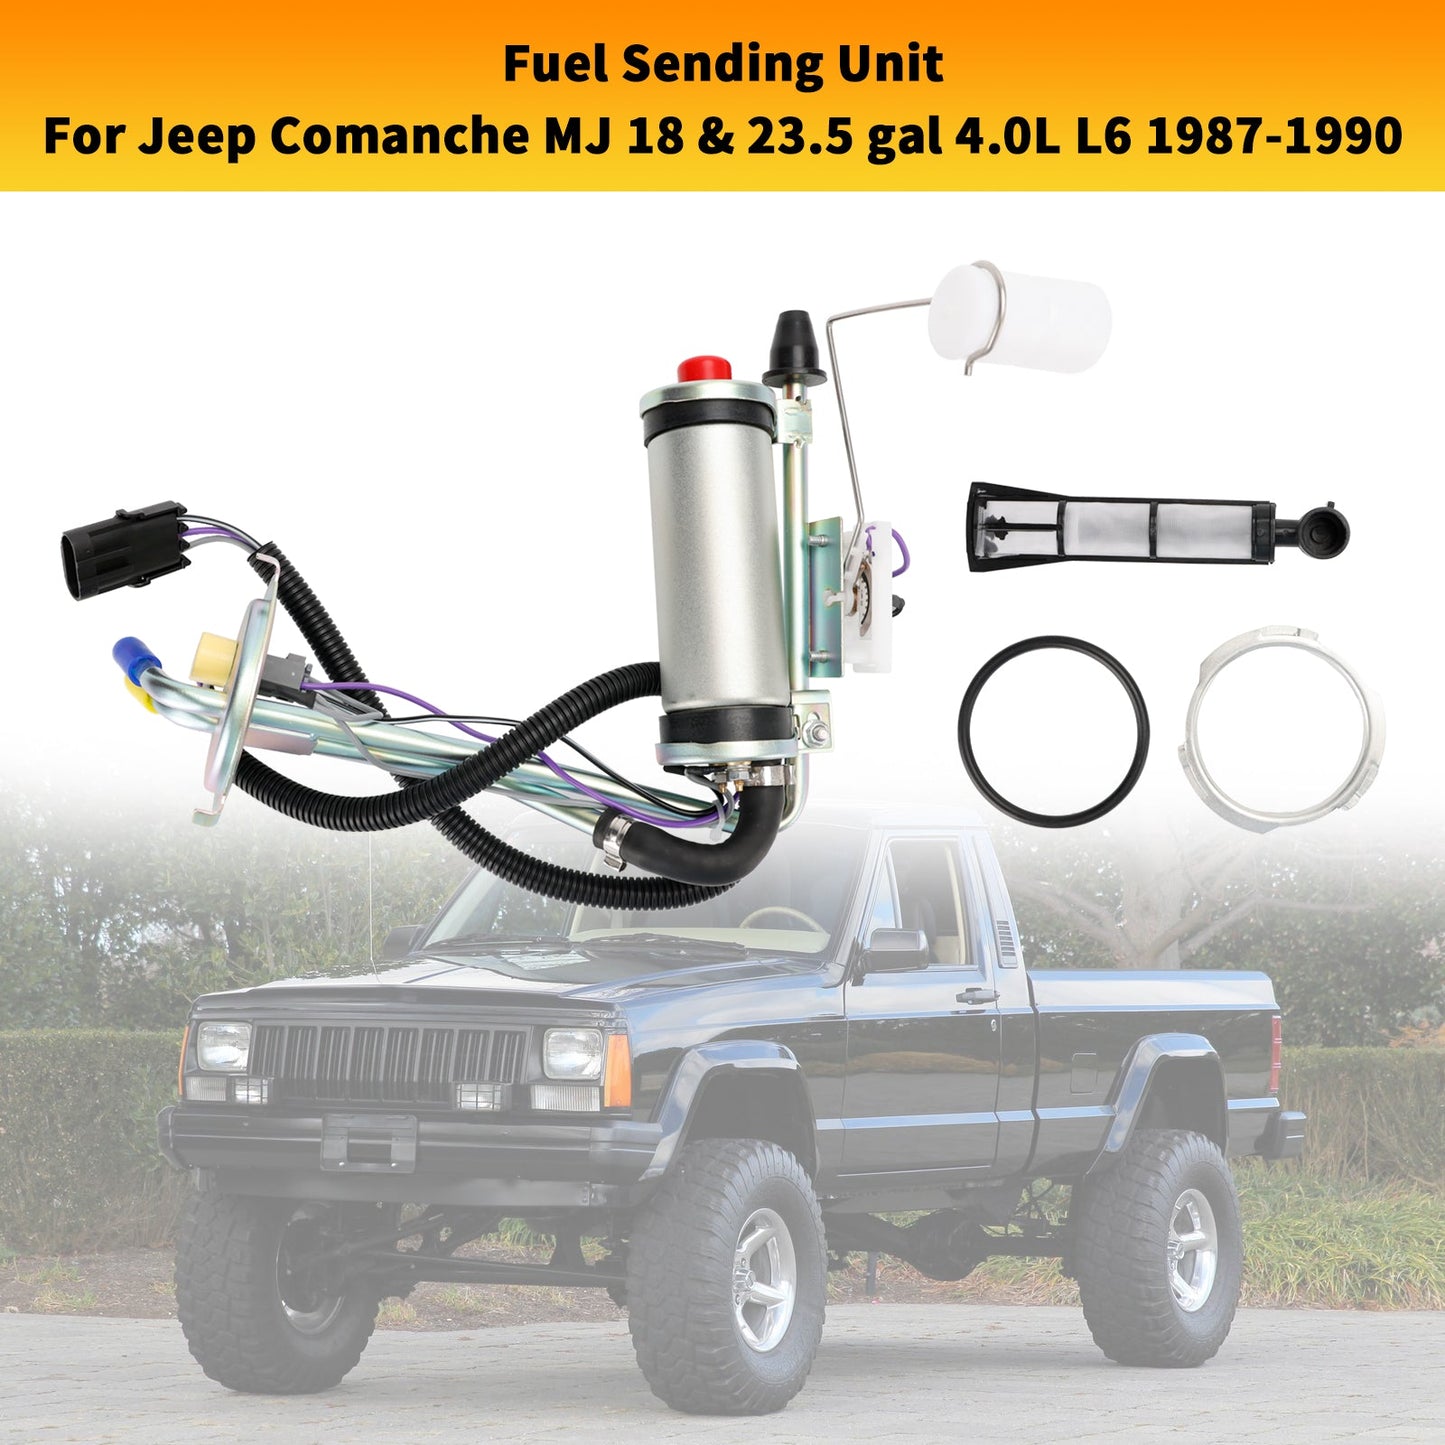 Unità di invio serbatoio benzina Jeep Comanche MJ 1987-1990 con FI con pompa carburante